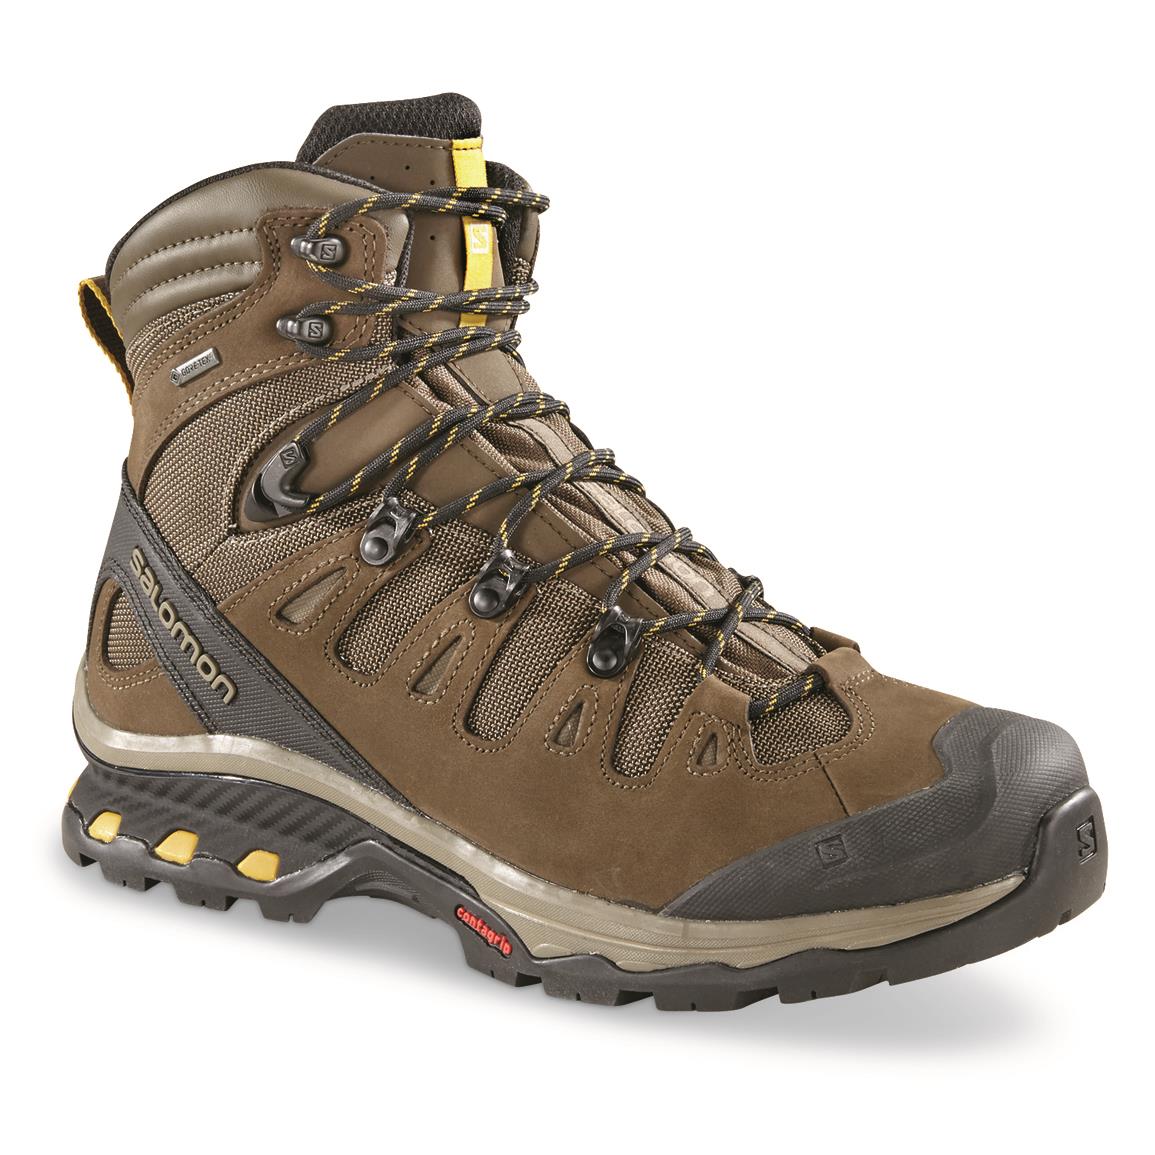 Quest 4D 3 GTX Waterproof Hiking Boots 